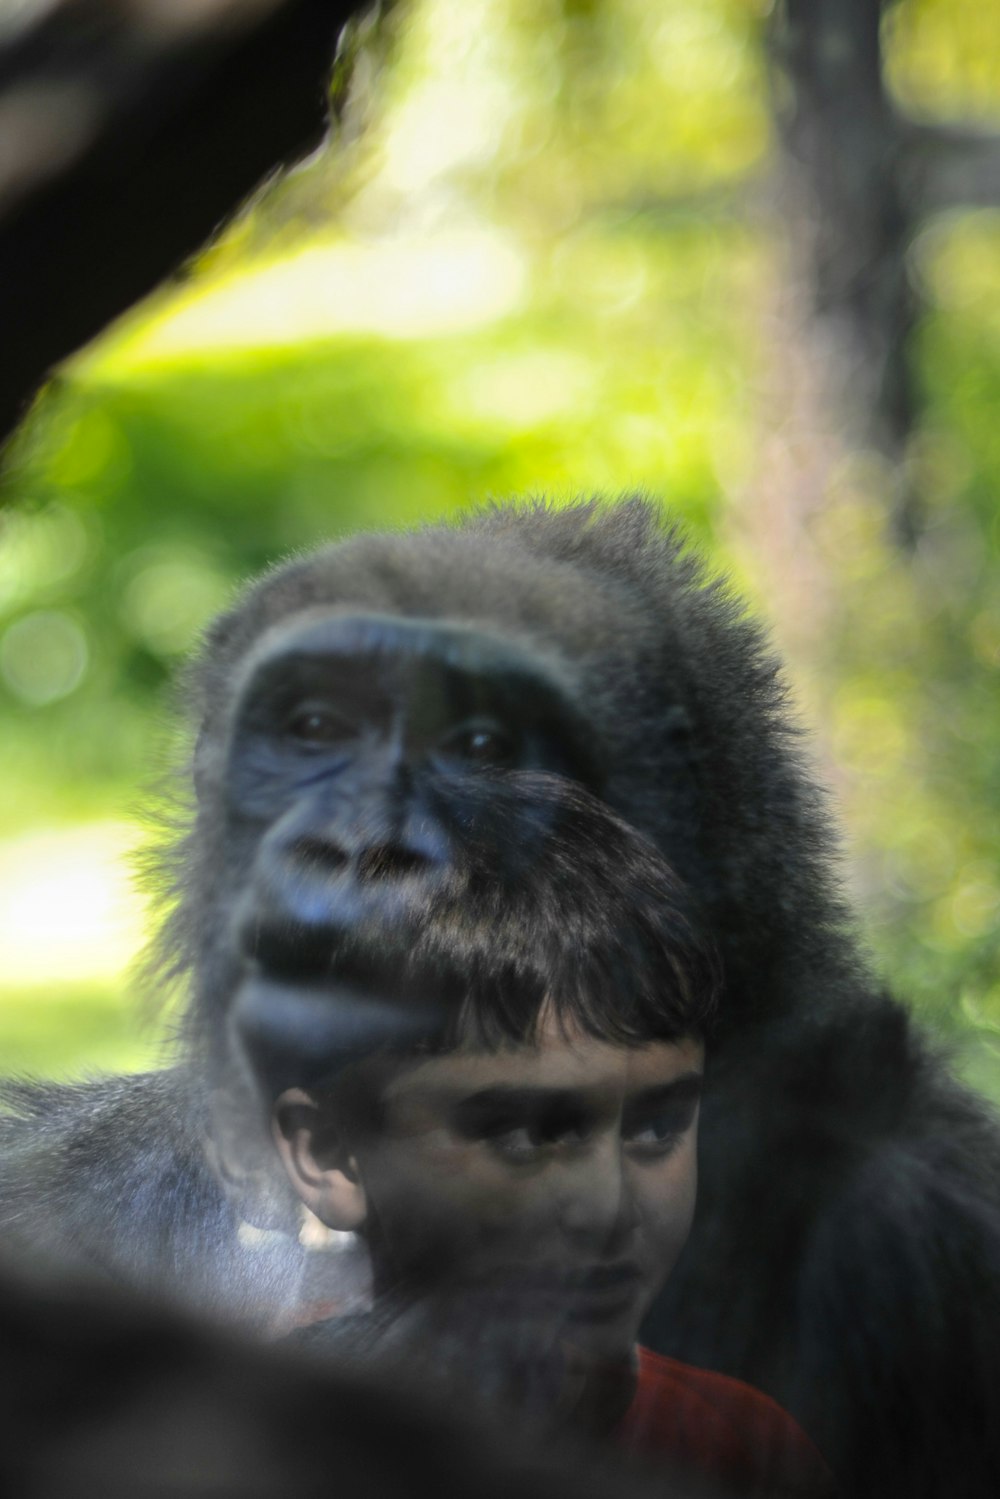 a gorilla with a baby gorilla